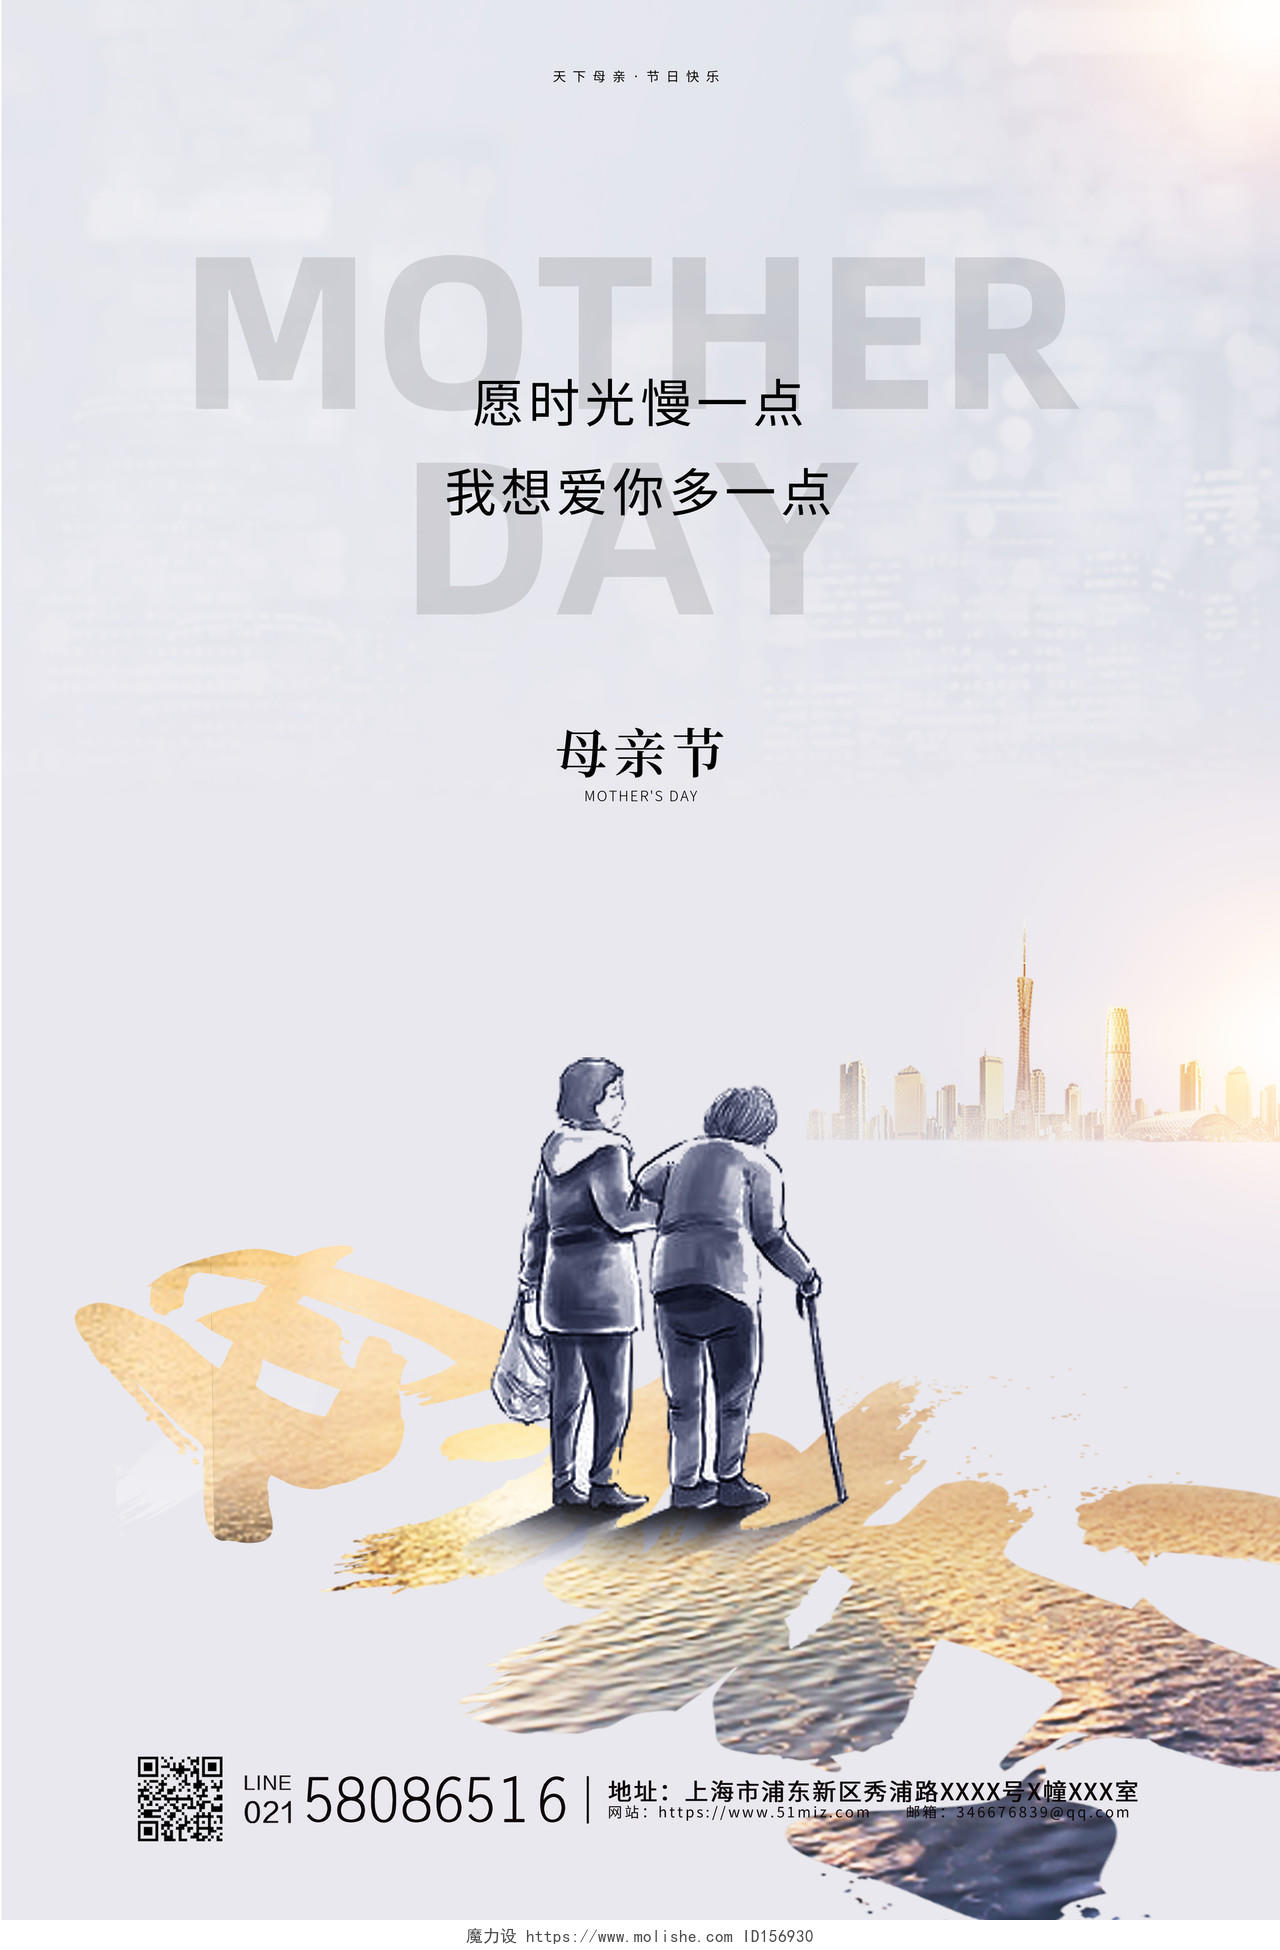 简约风纯5月10日母亲节节日宣传海报设计